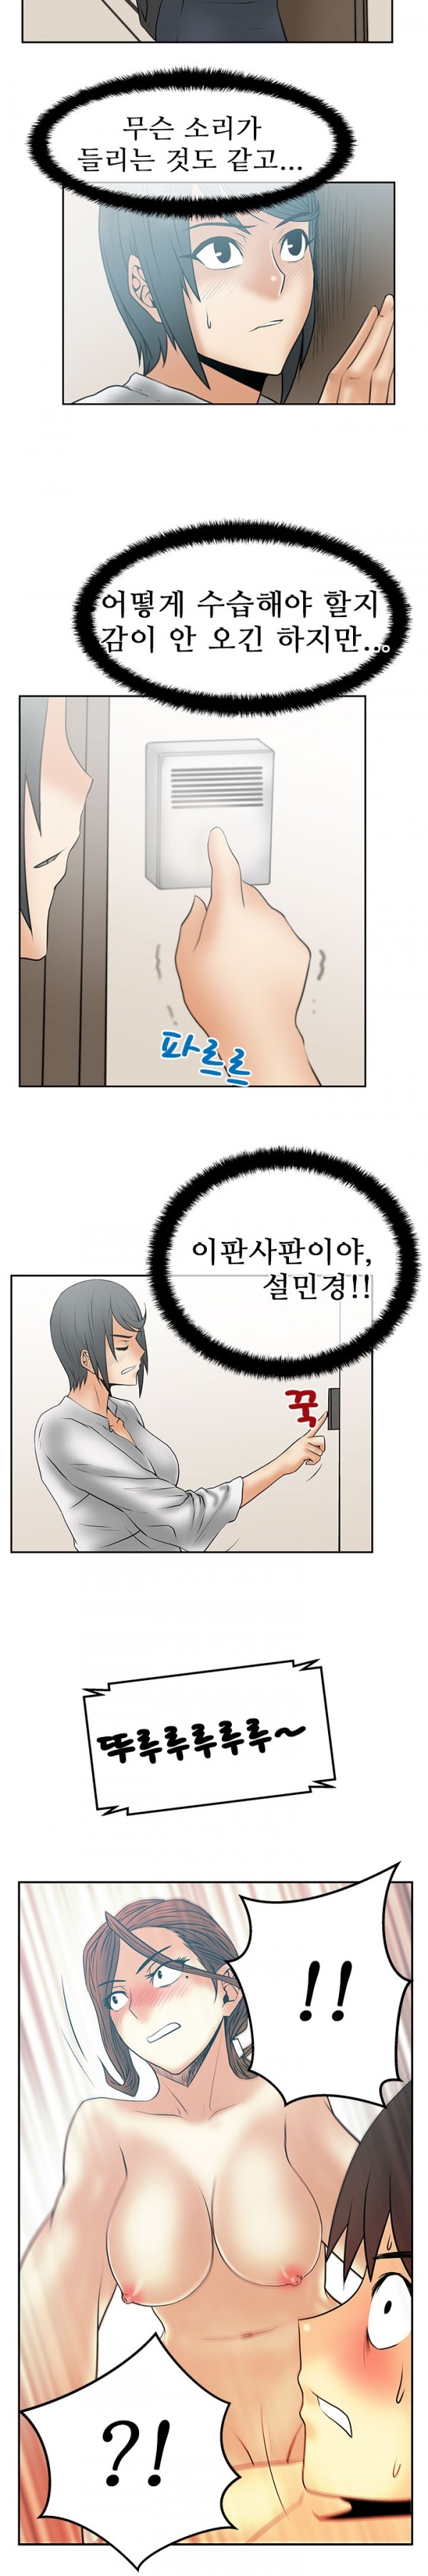 [Minu Mindu] Office Lady Vol. 1 [Korean] 346